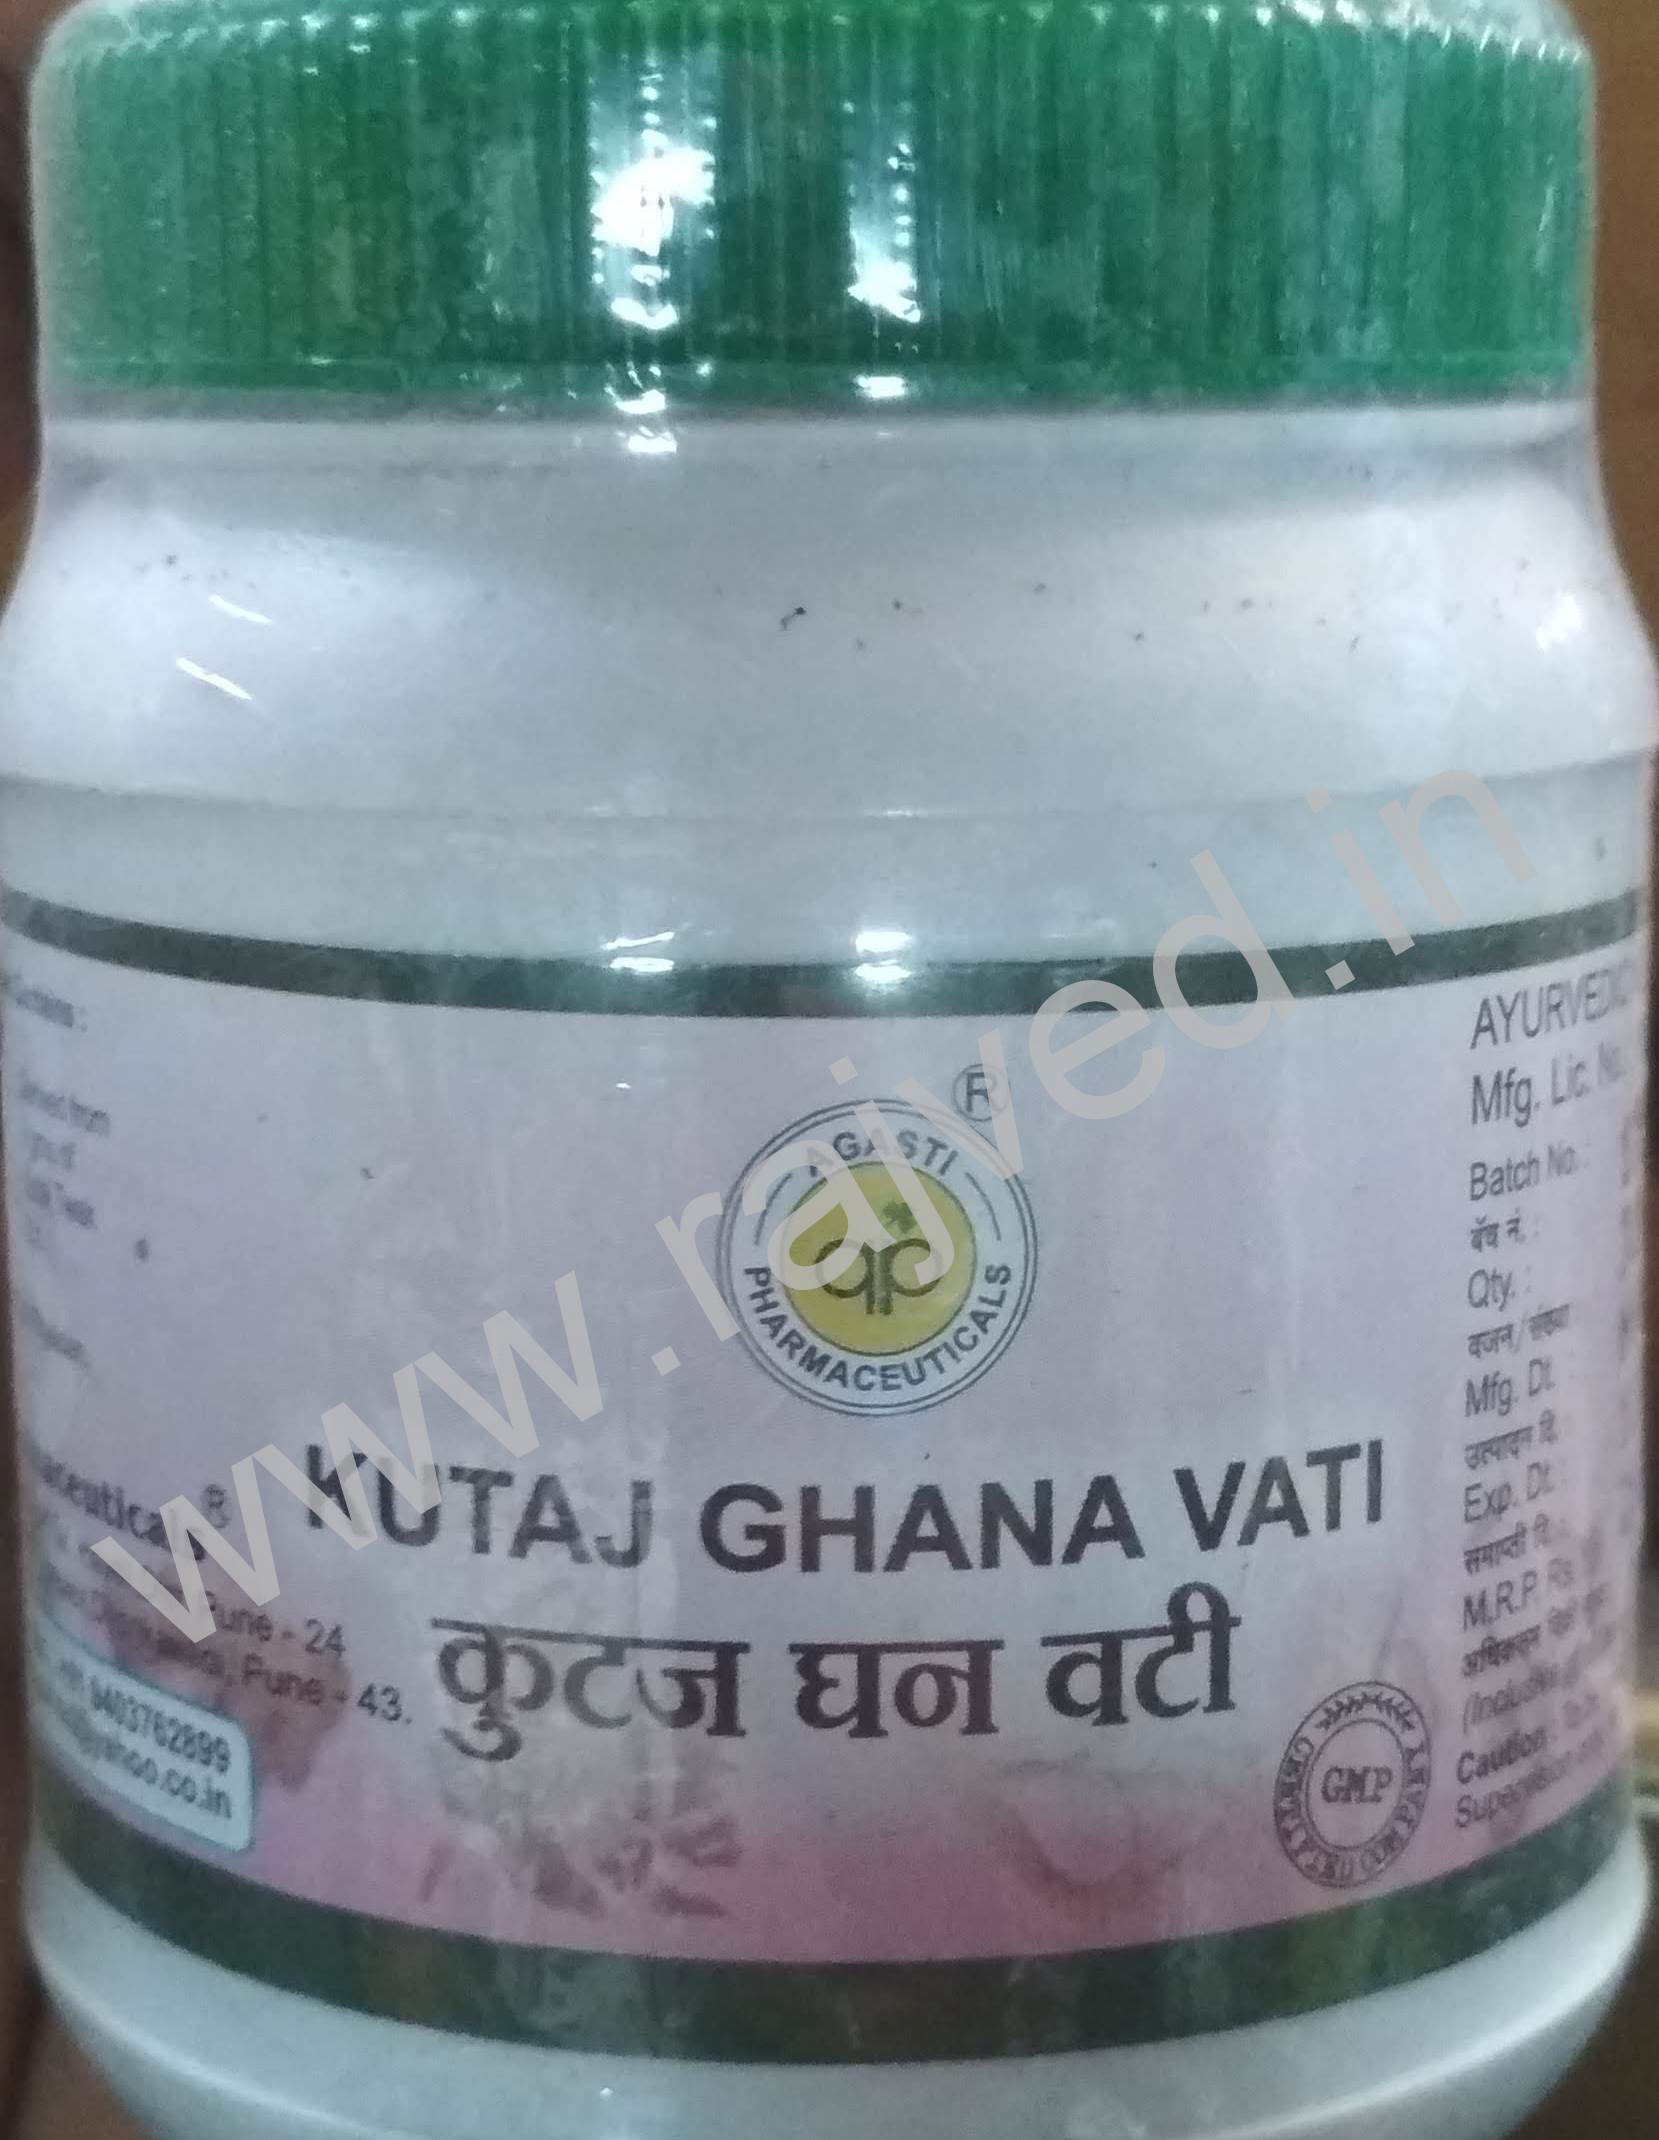 kutaj ghana vati 500 gm 2000 tablet upto 15% off agasti pharmaceuticals